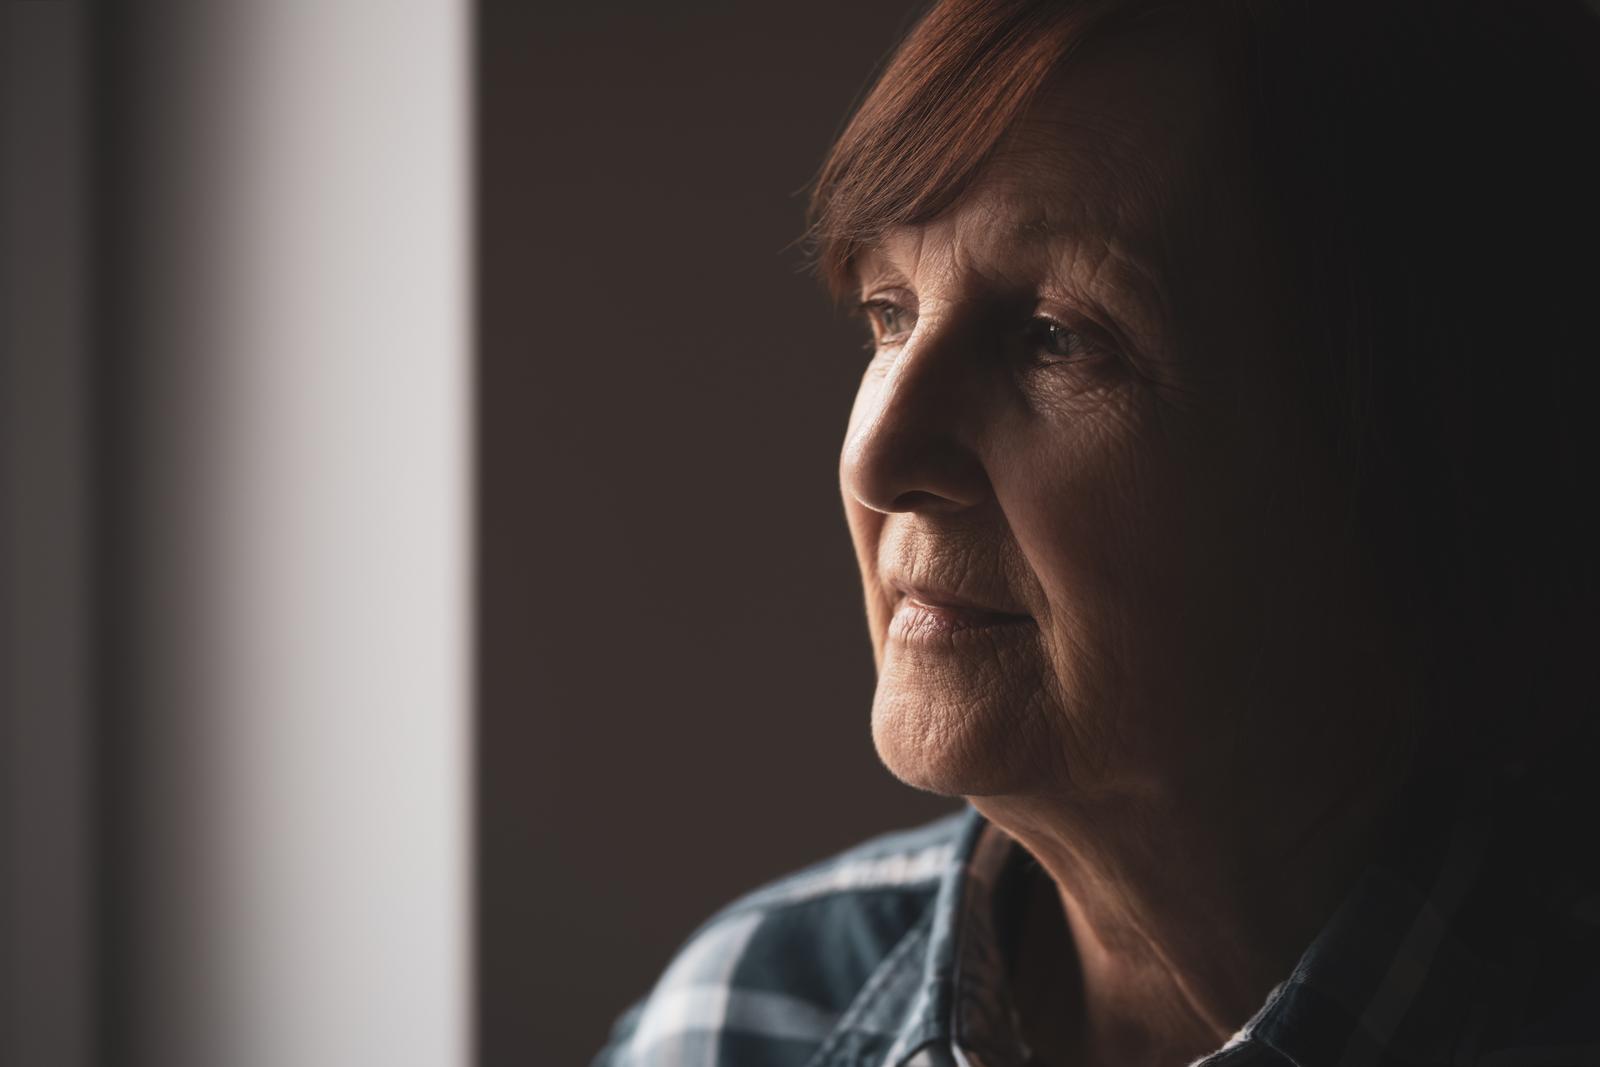 Choroba Alzheimera – co warto o niej wiedzieć? Przyczyny, objawy, diagnostyka, leczenie